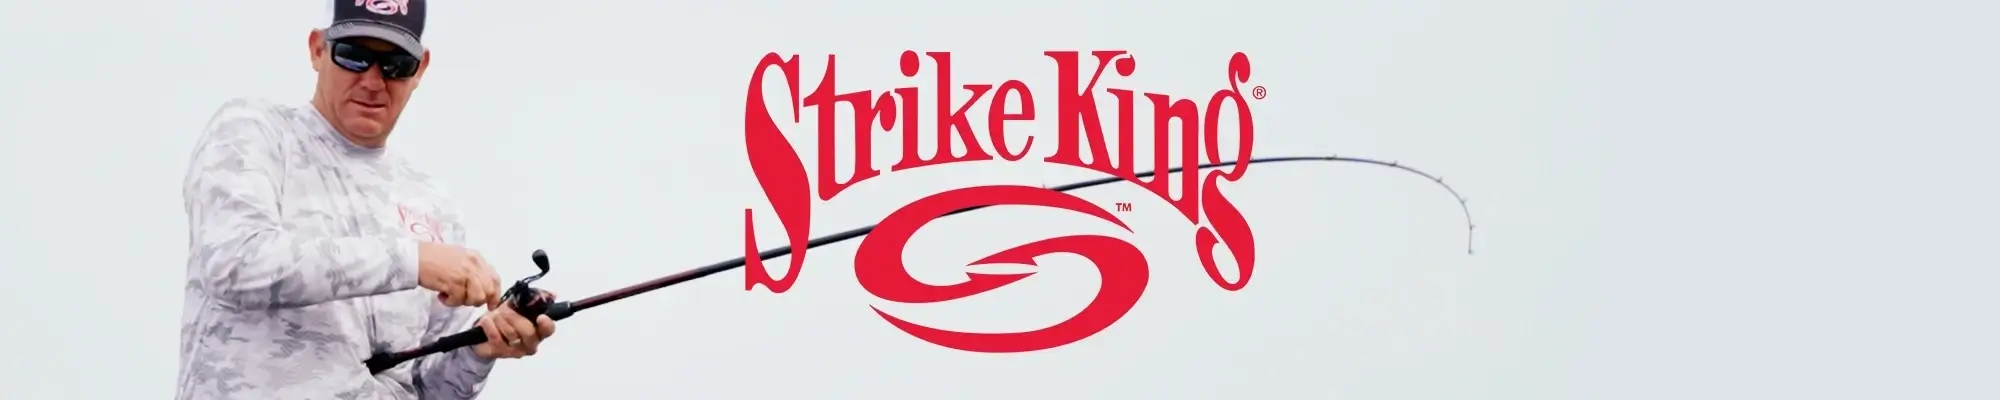 Shop Strike King